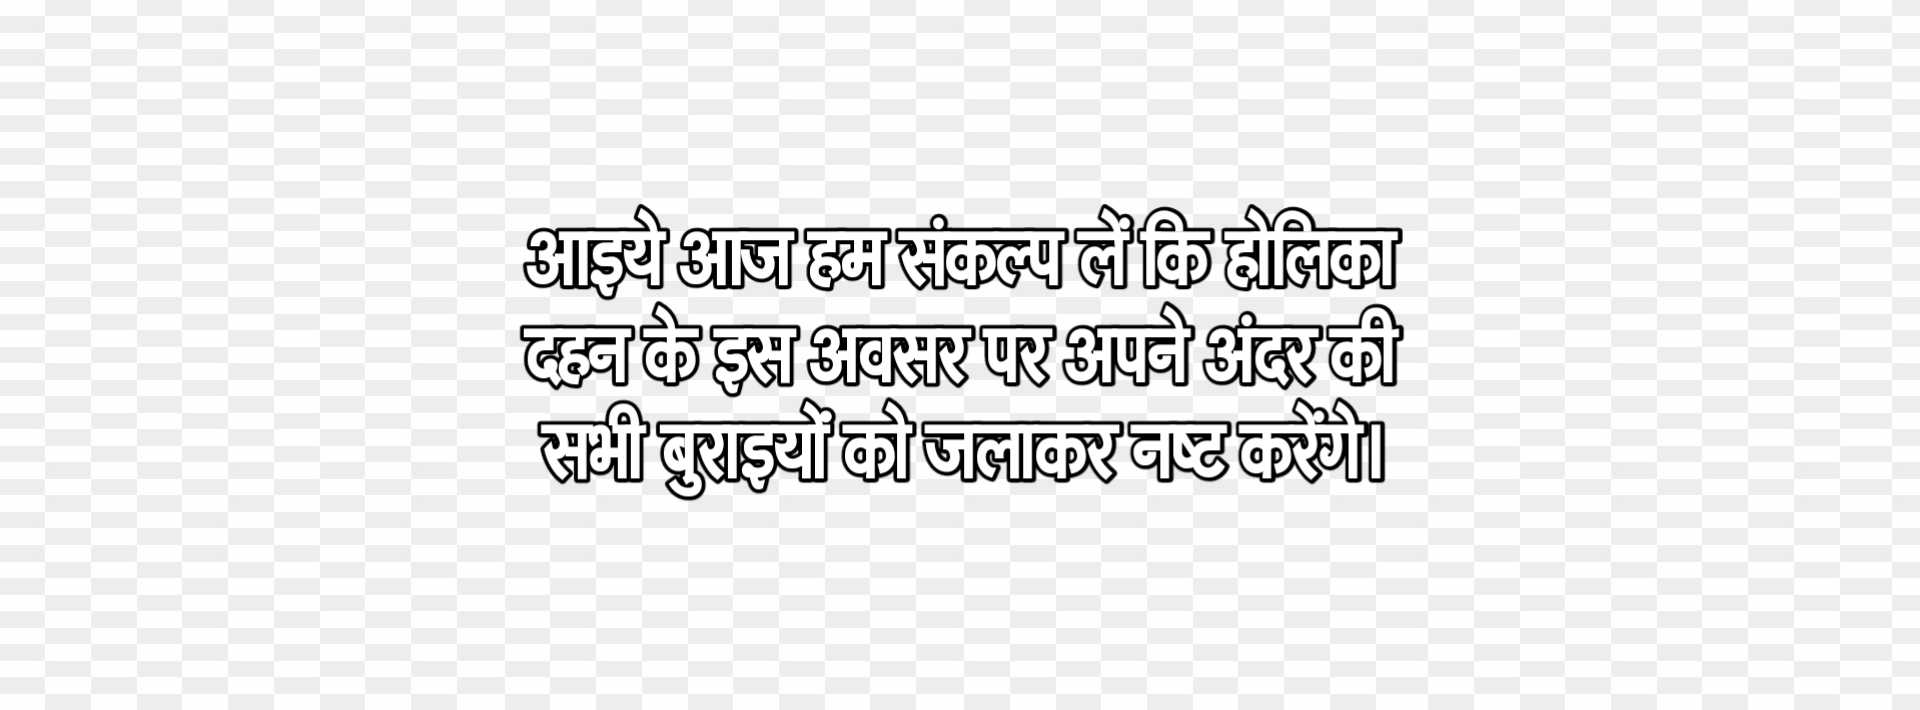 Holika Dahan quote in hindi